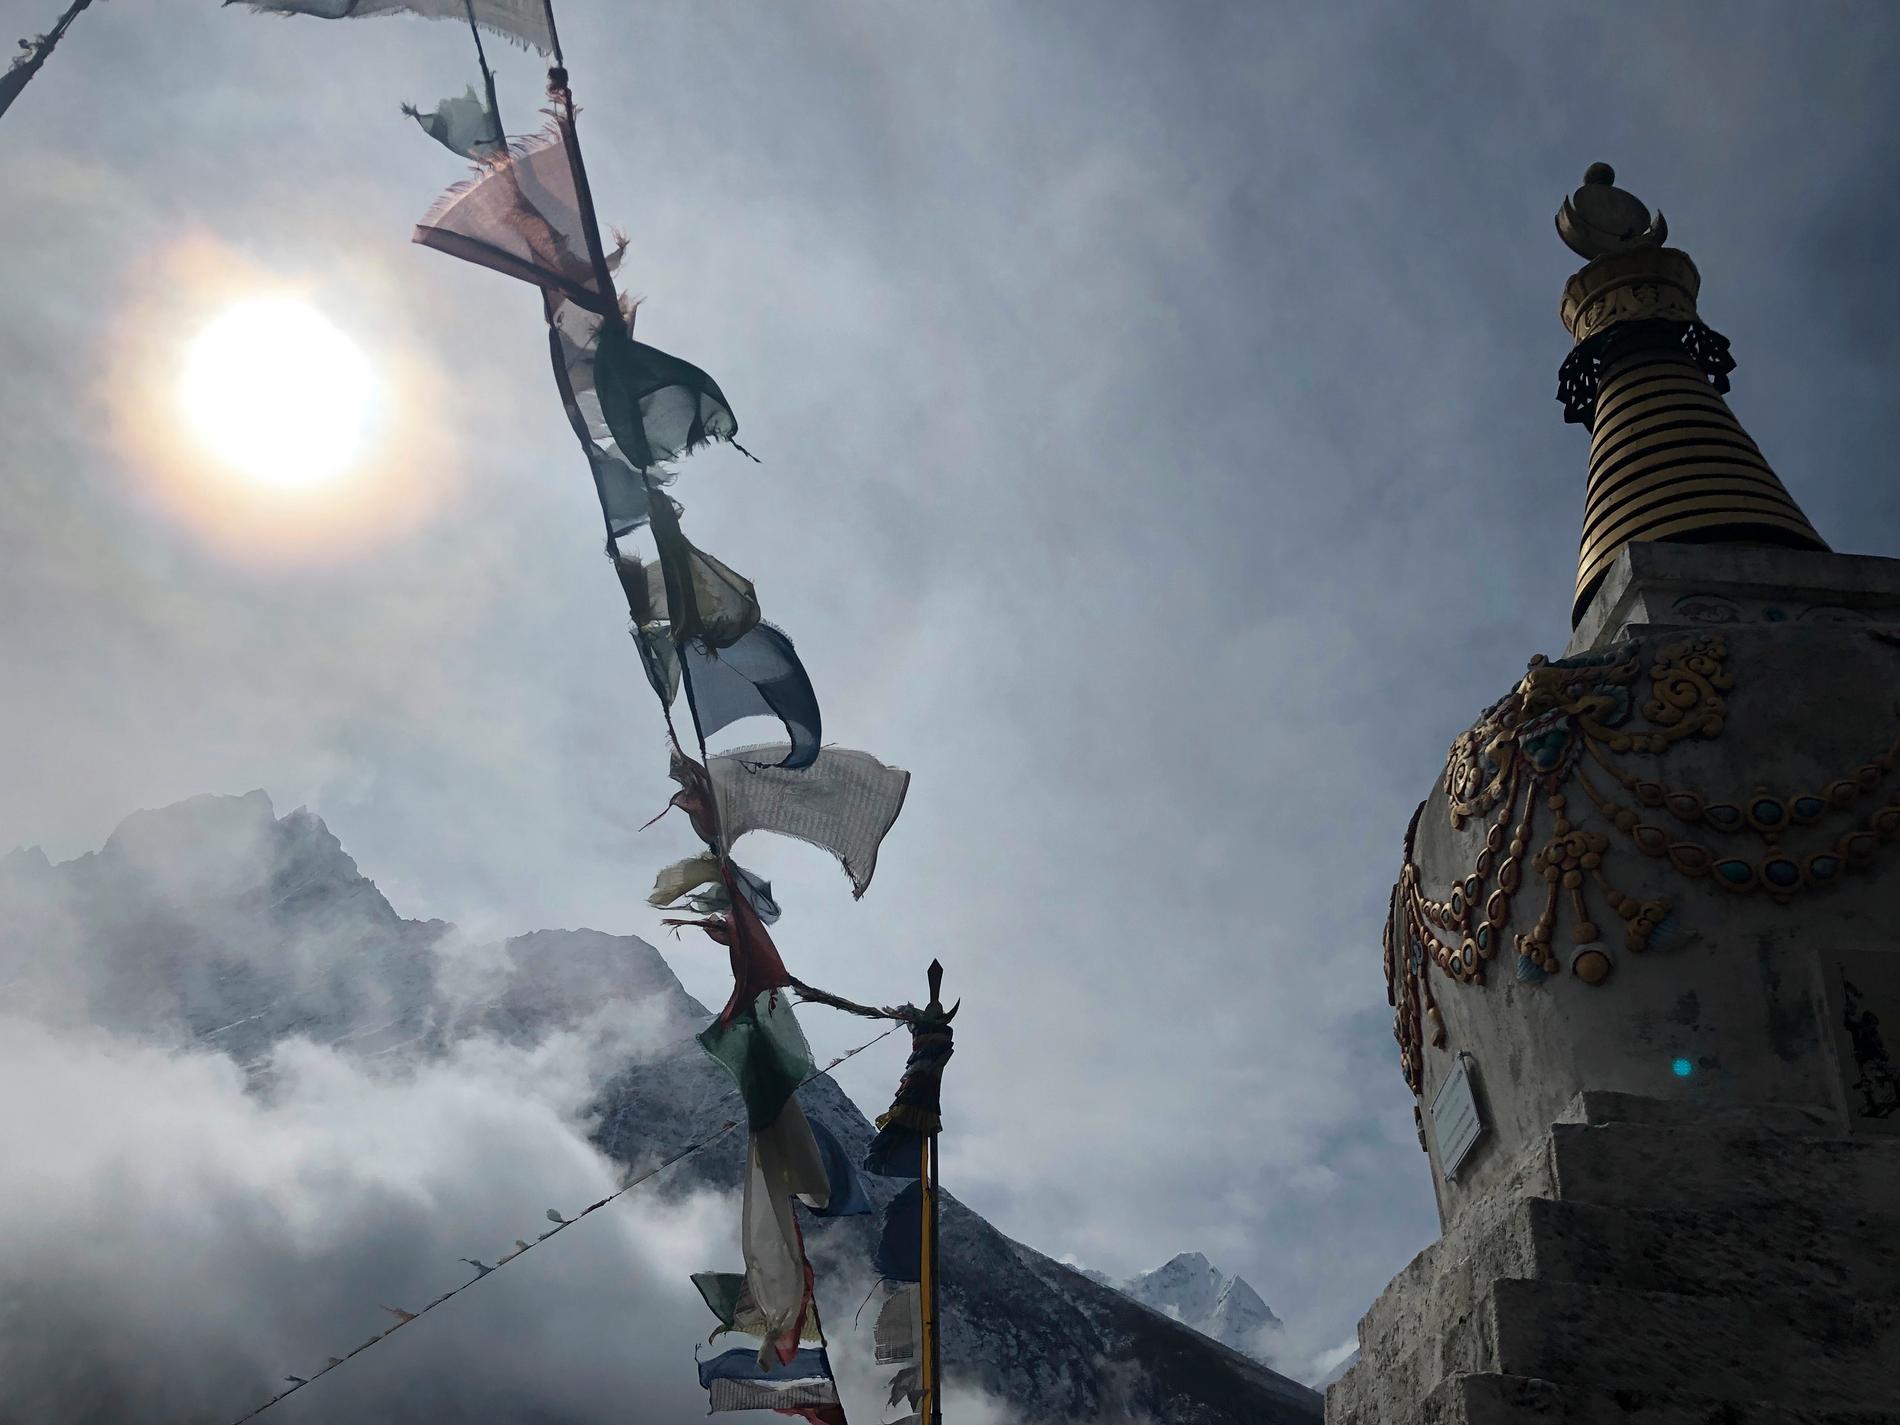 Det har varit en svart vecka på Mount Everest. Under lördagen steg veckans dödstal till åtta efter att en brittisk man mist livet på världens högsta berg. Arkivbild.